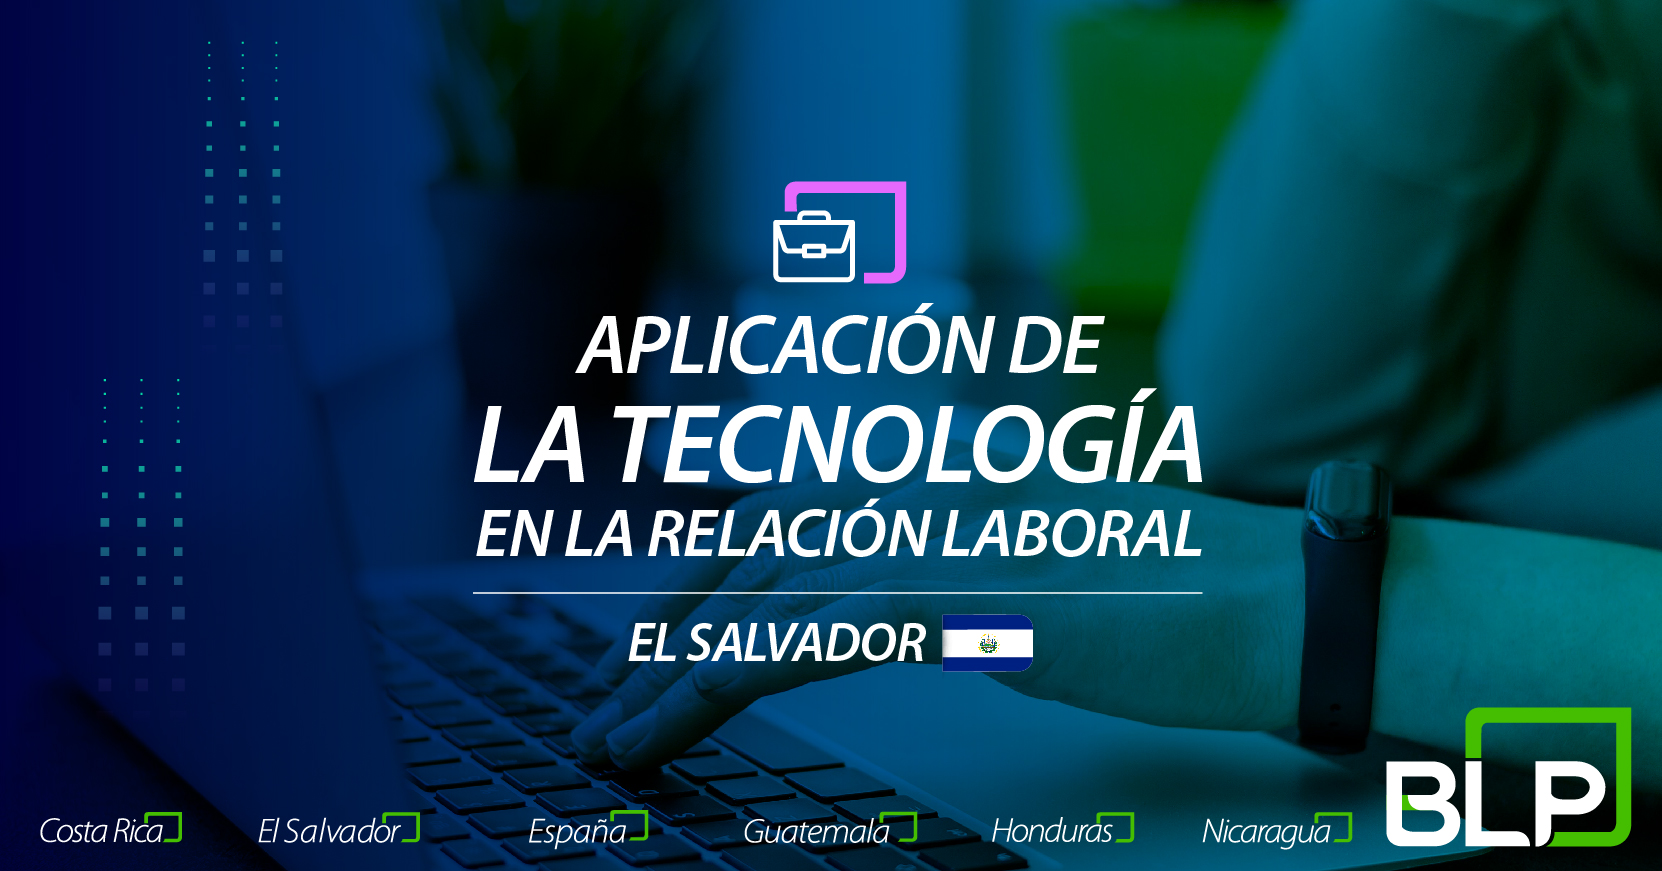 Aplicación de la tecnología en la relación laboral: perspectivas de El Salvador